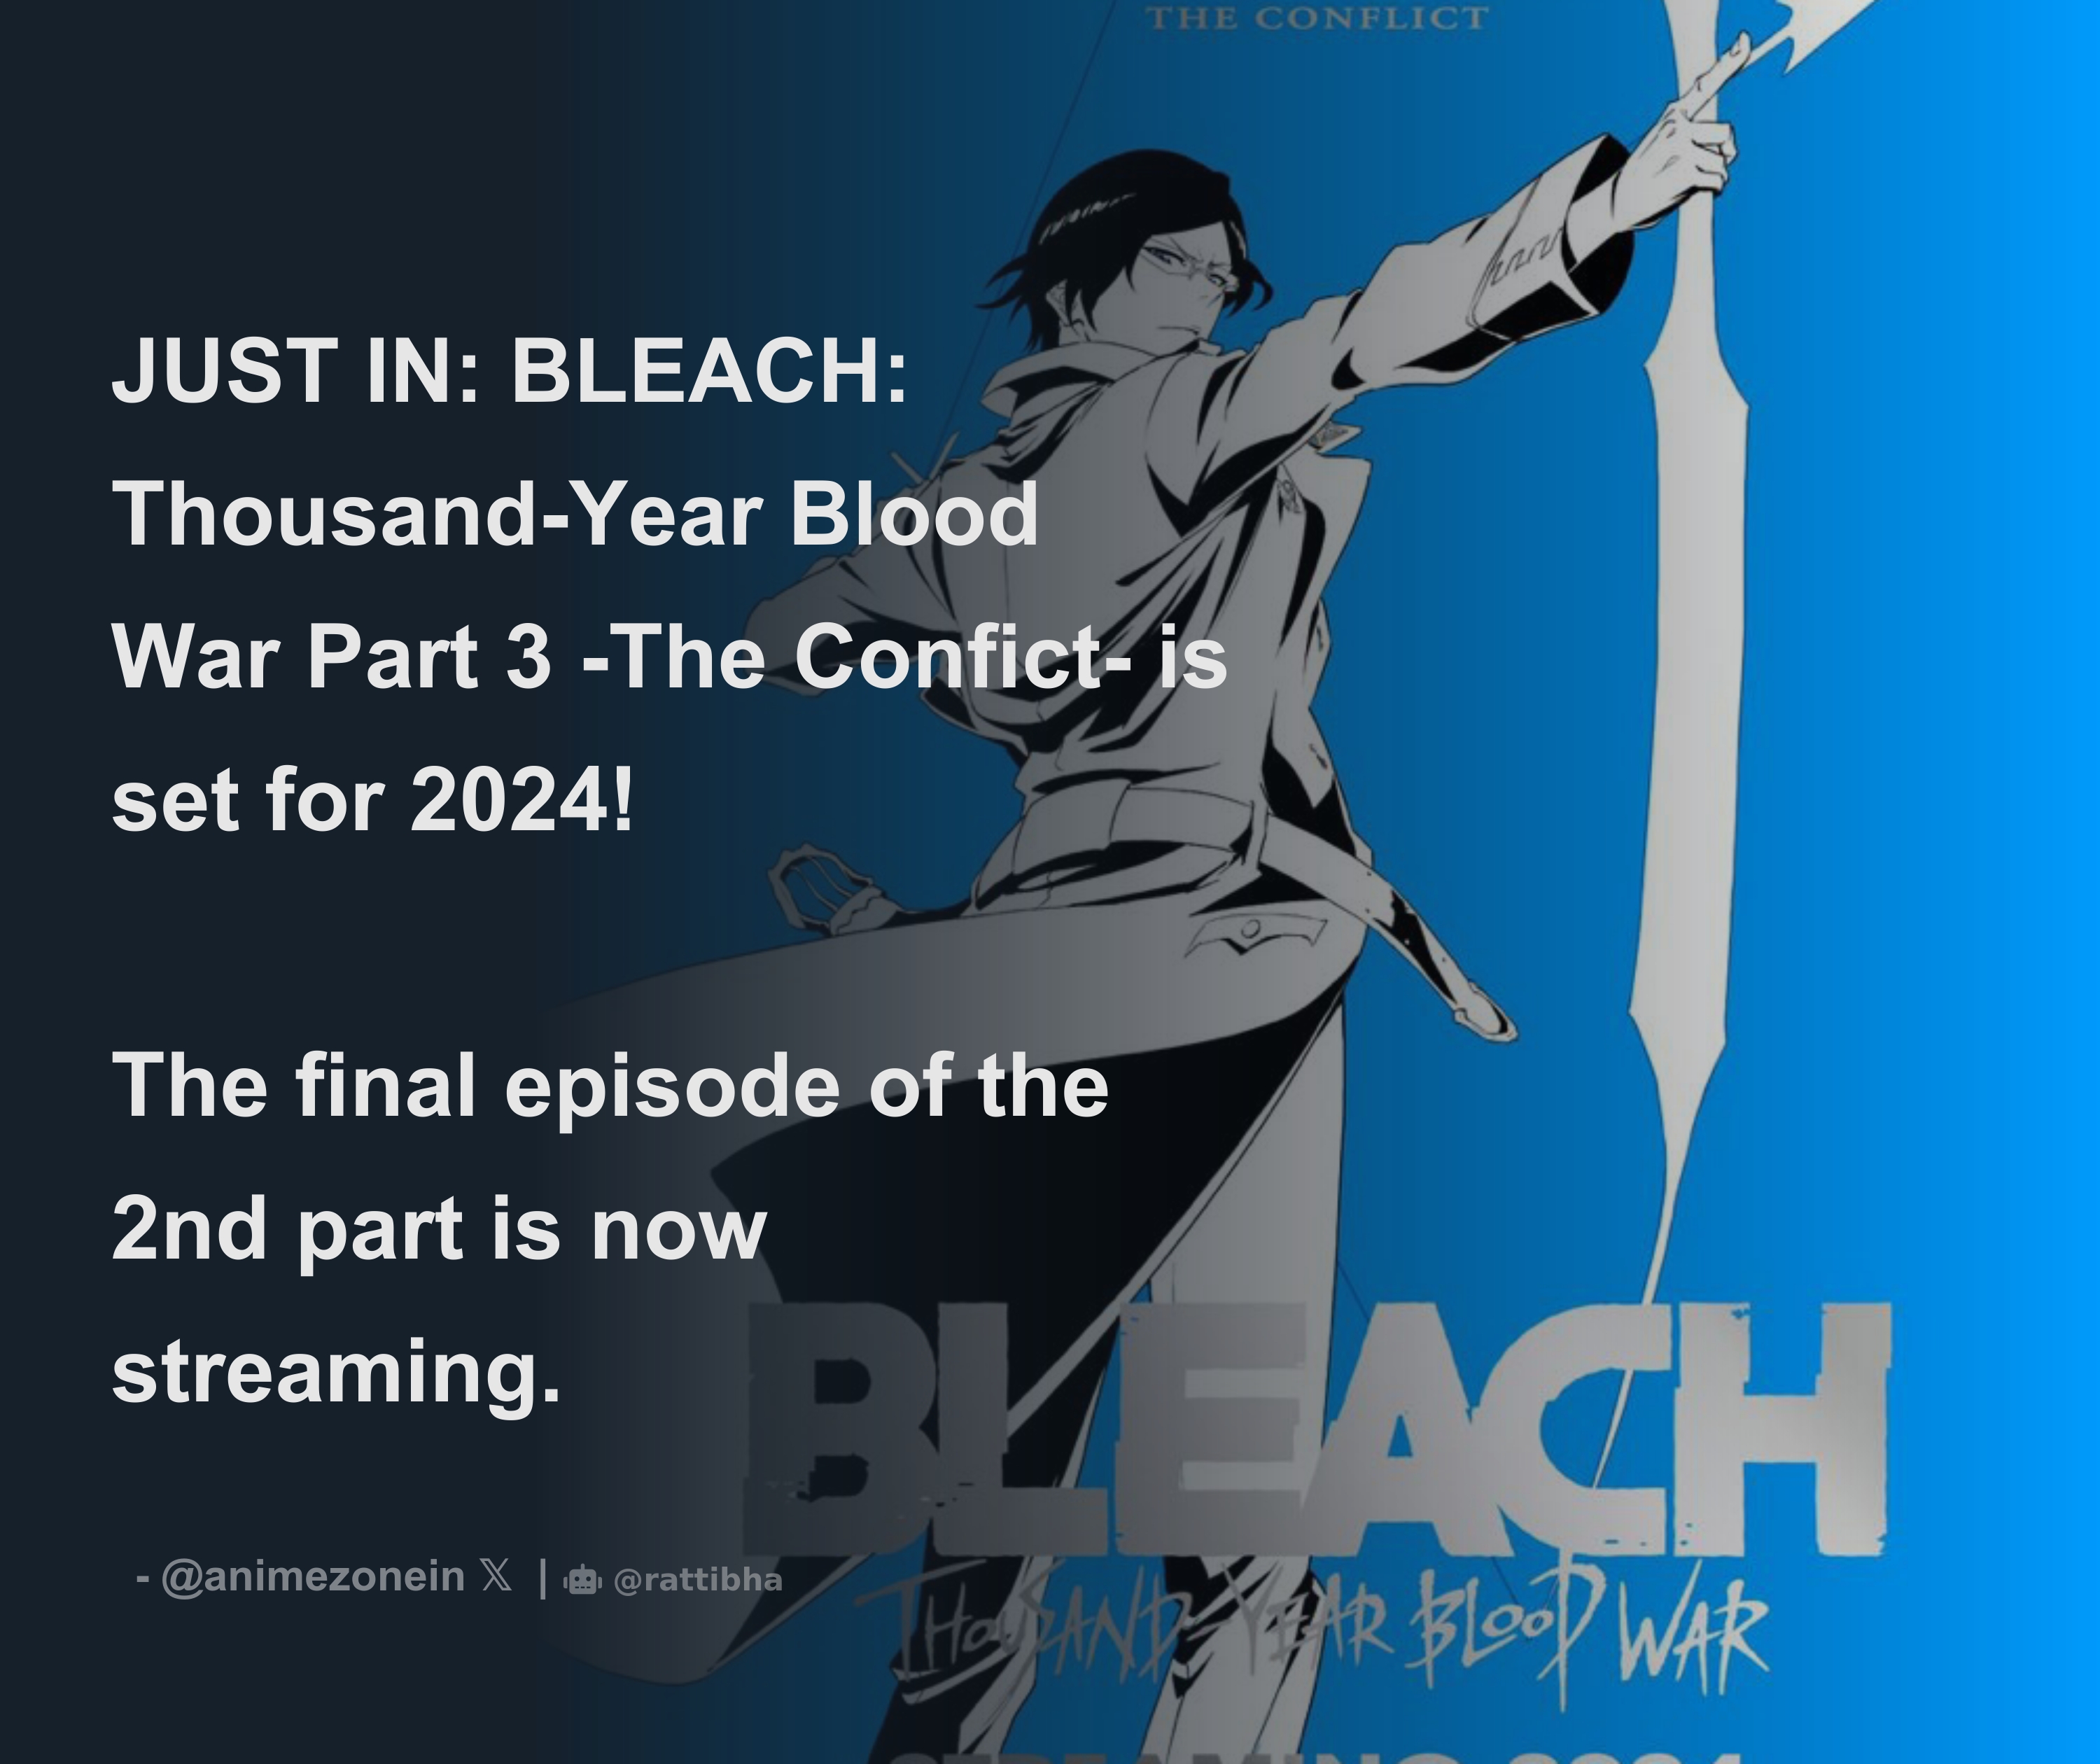  Parte 3 de 'Bleach: Thousand-Year Blood War' será  lançada em 2024